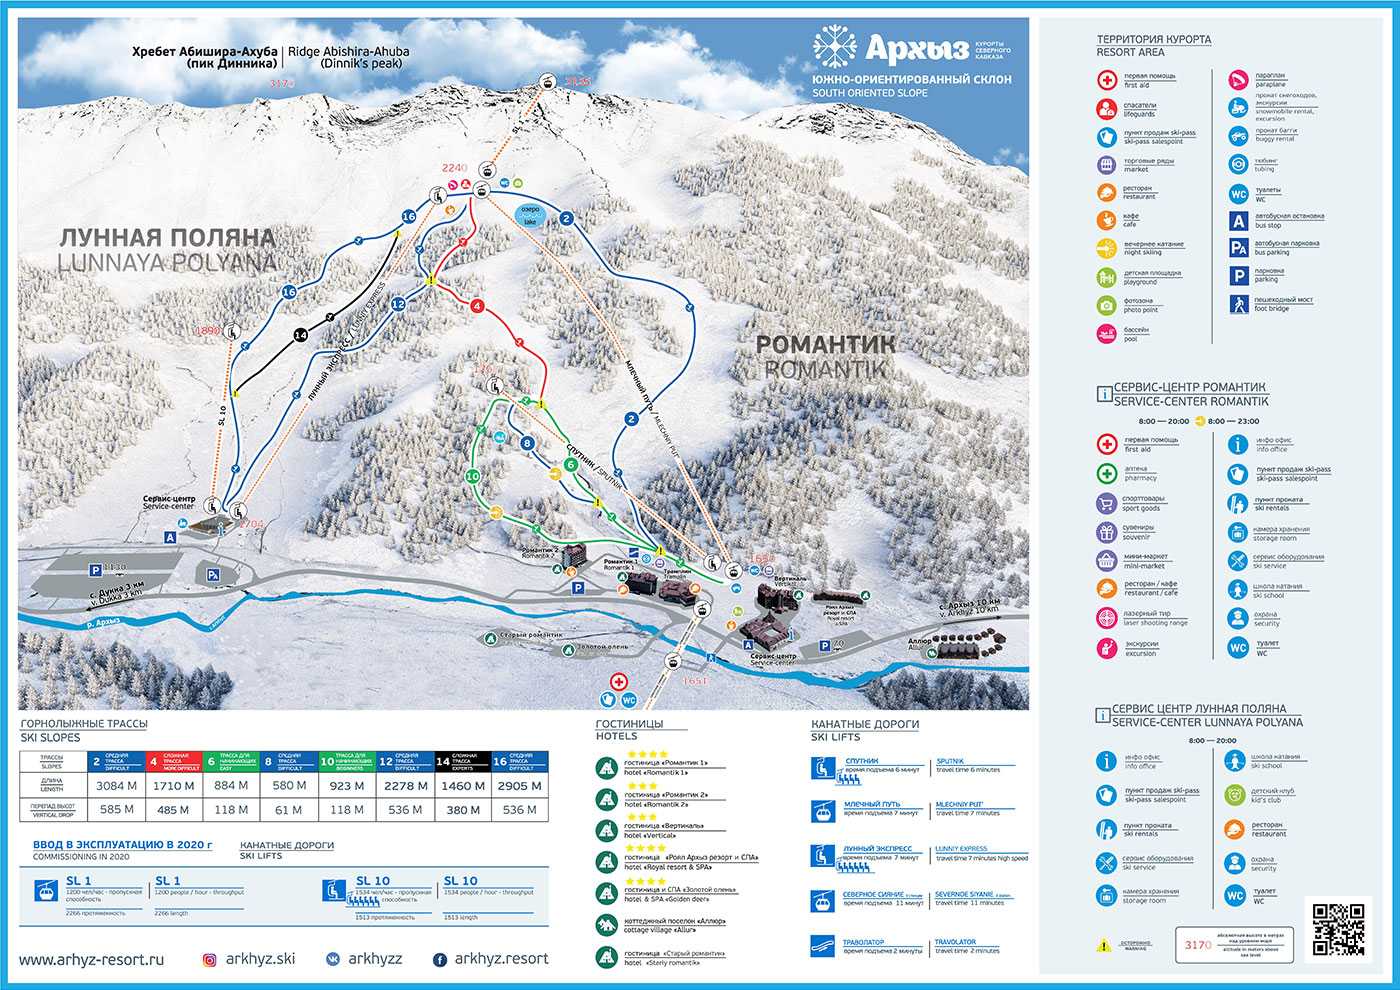 Для всей семьи: 32 горнолыжных курорта в эстонии и странах-соседях